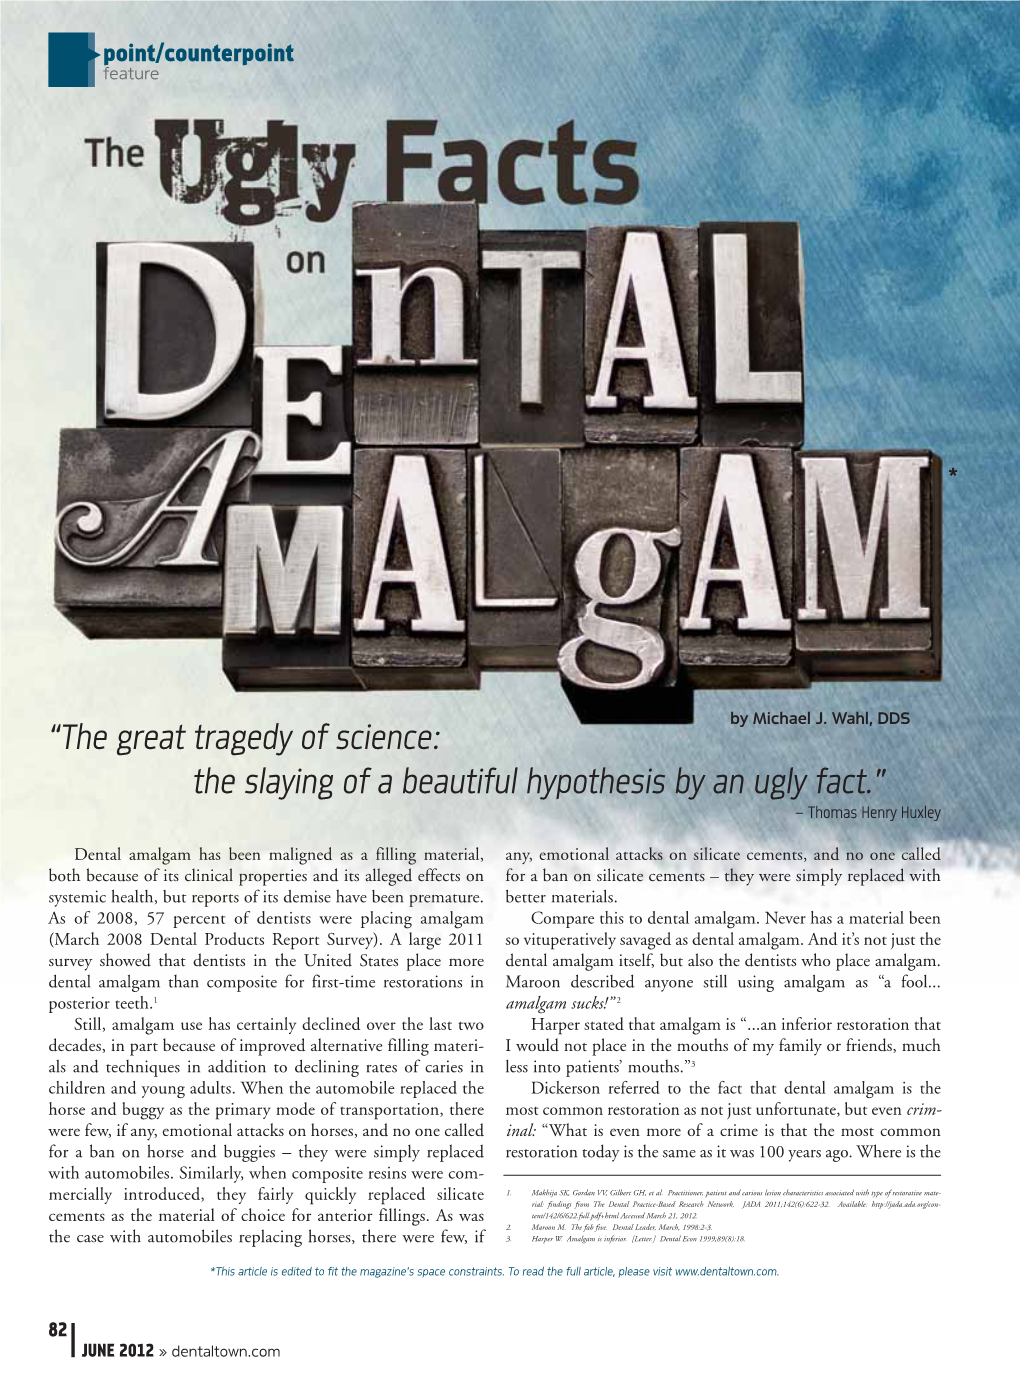 The Ugly Facts on Dental Amalgam